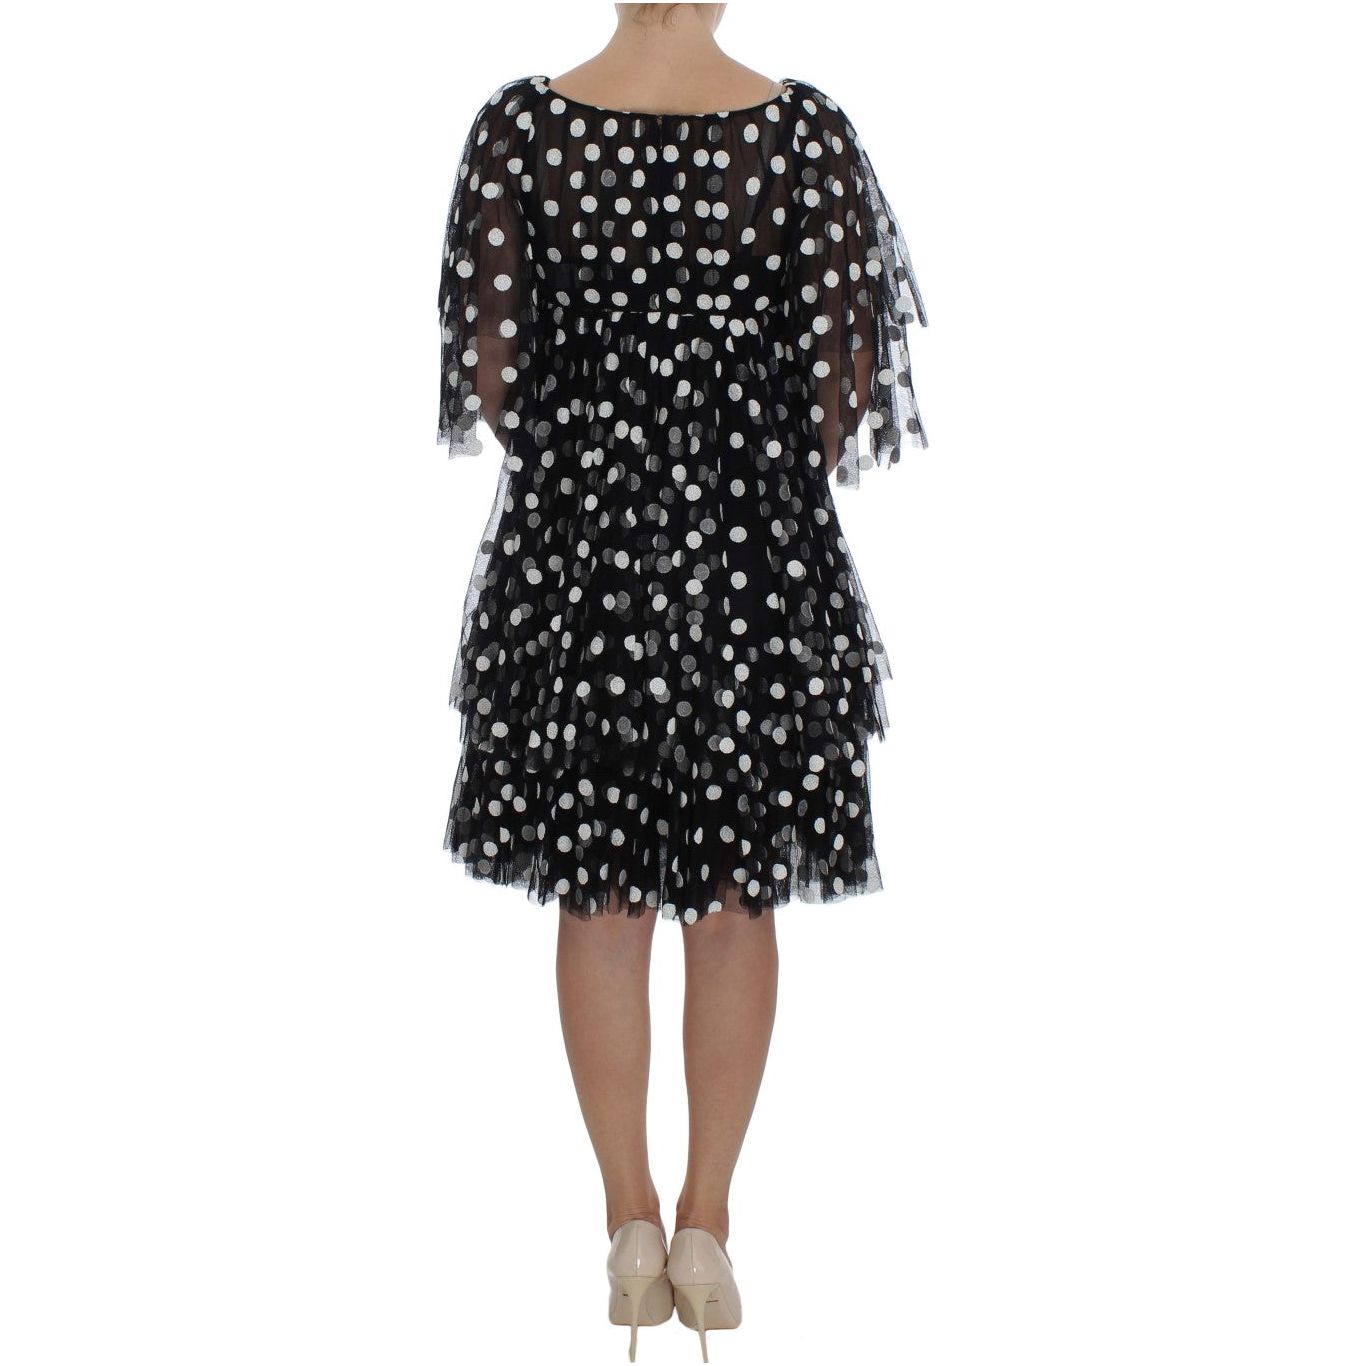 Dolce & Gabbana Elegant Polka Dotted Ruffled Dress black-white-polka-dotted-ruffled-dress